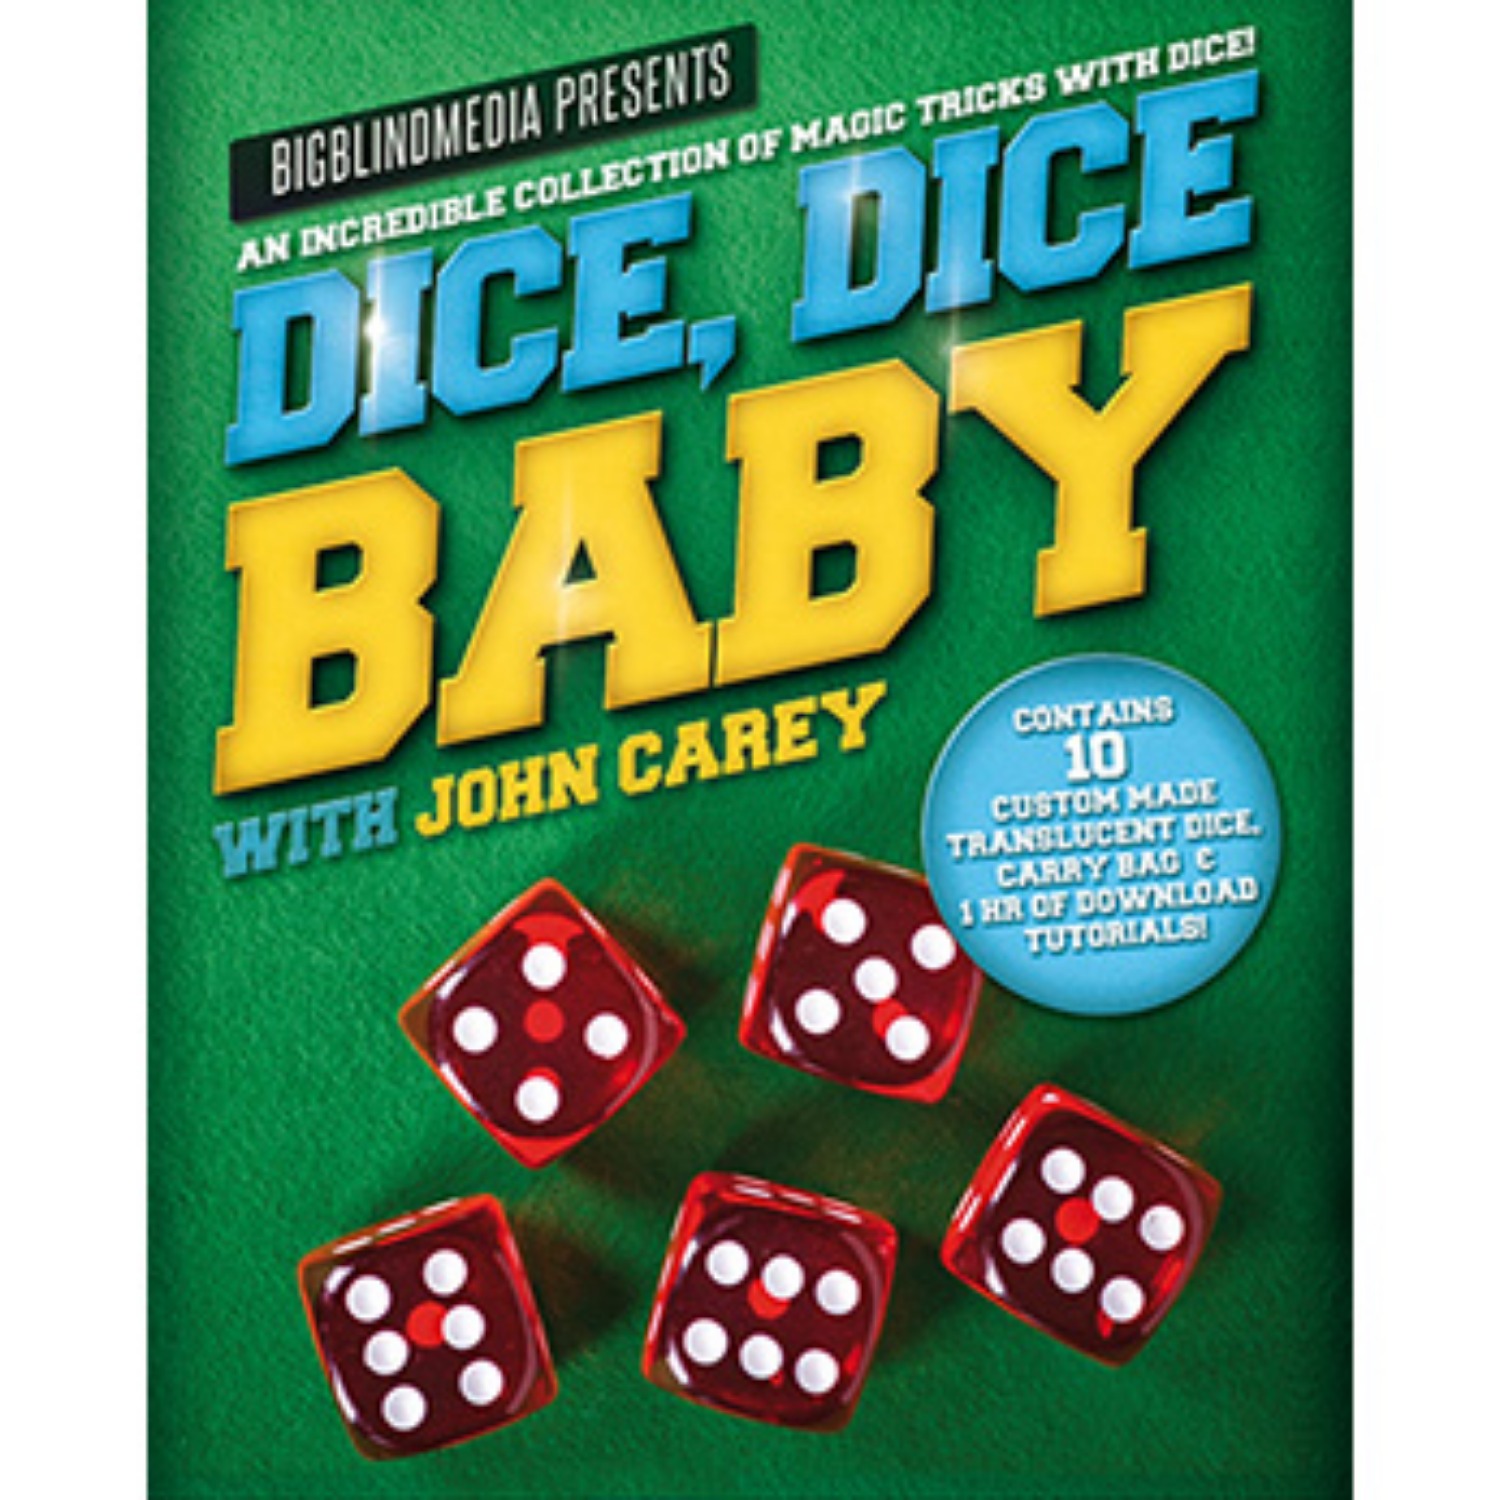 [다이스,다이스베이비] Dice, Dice Baby with John Carey (Props and Online Instructions)